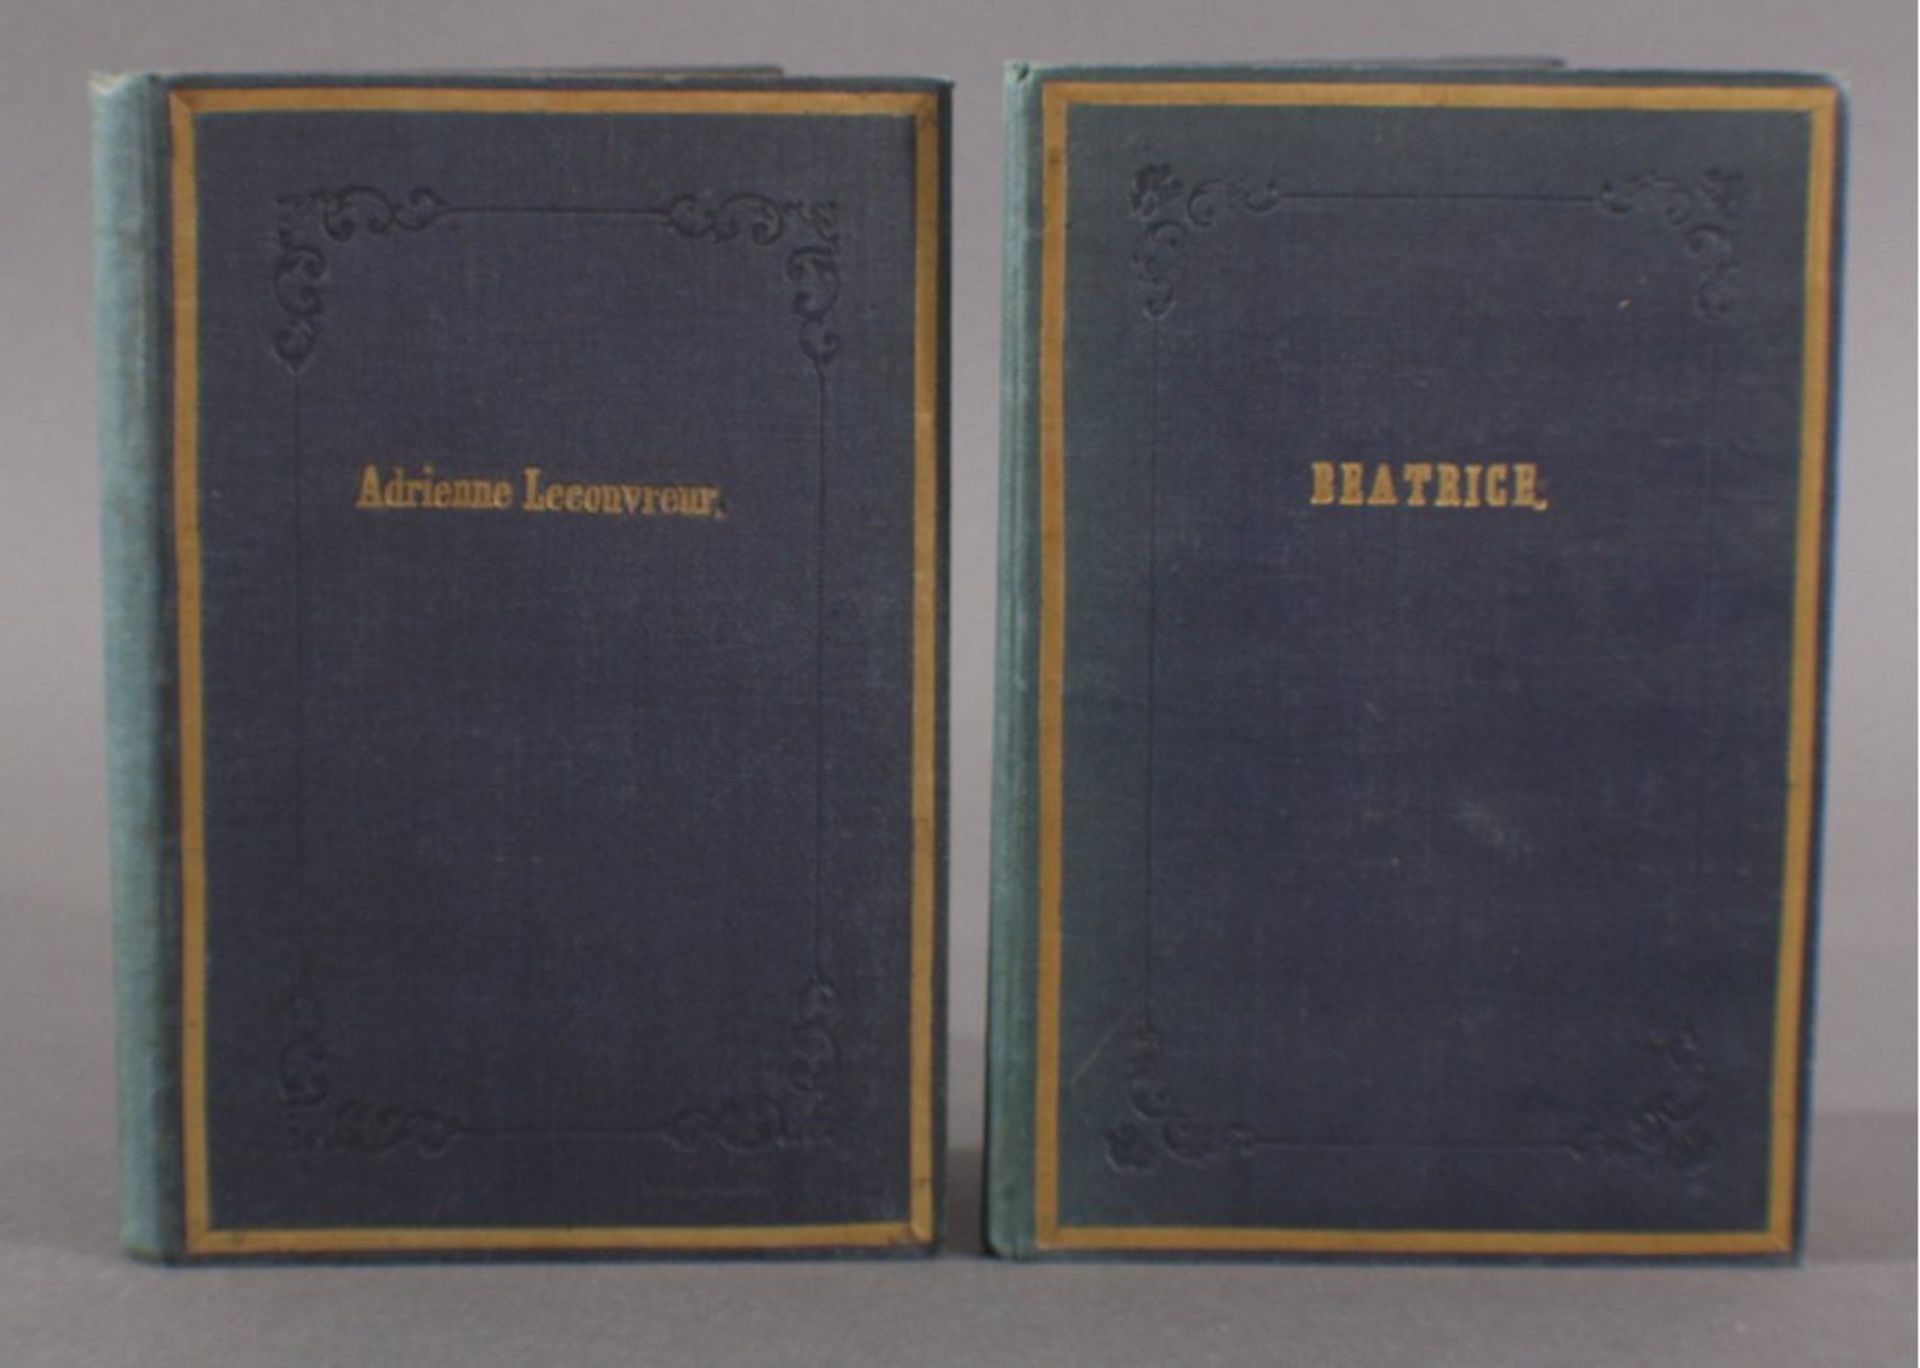 2 handgeschriebene Theaterskripte, gebundenOhne Datierung, vermutlich um 1900/1920. Adrienne